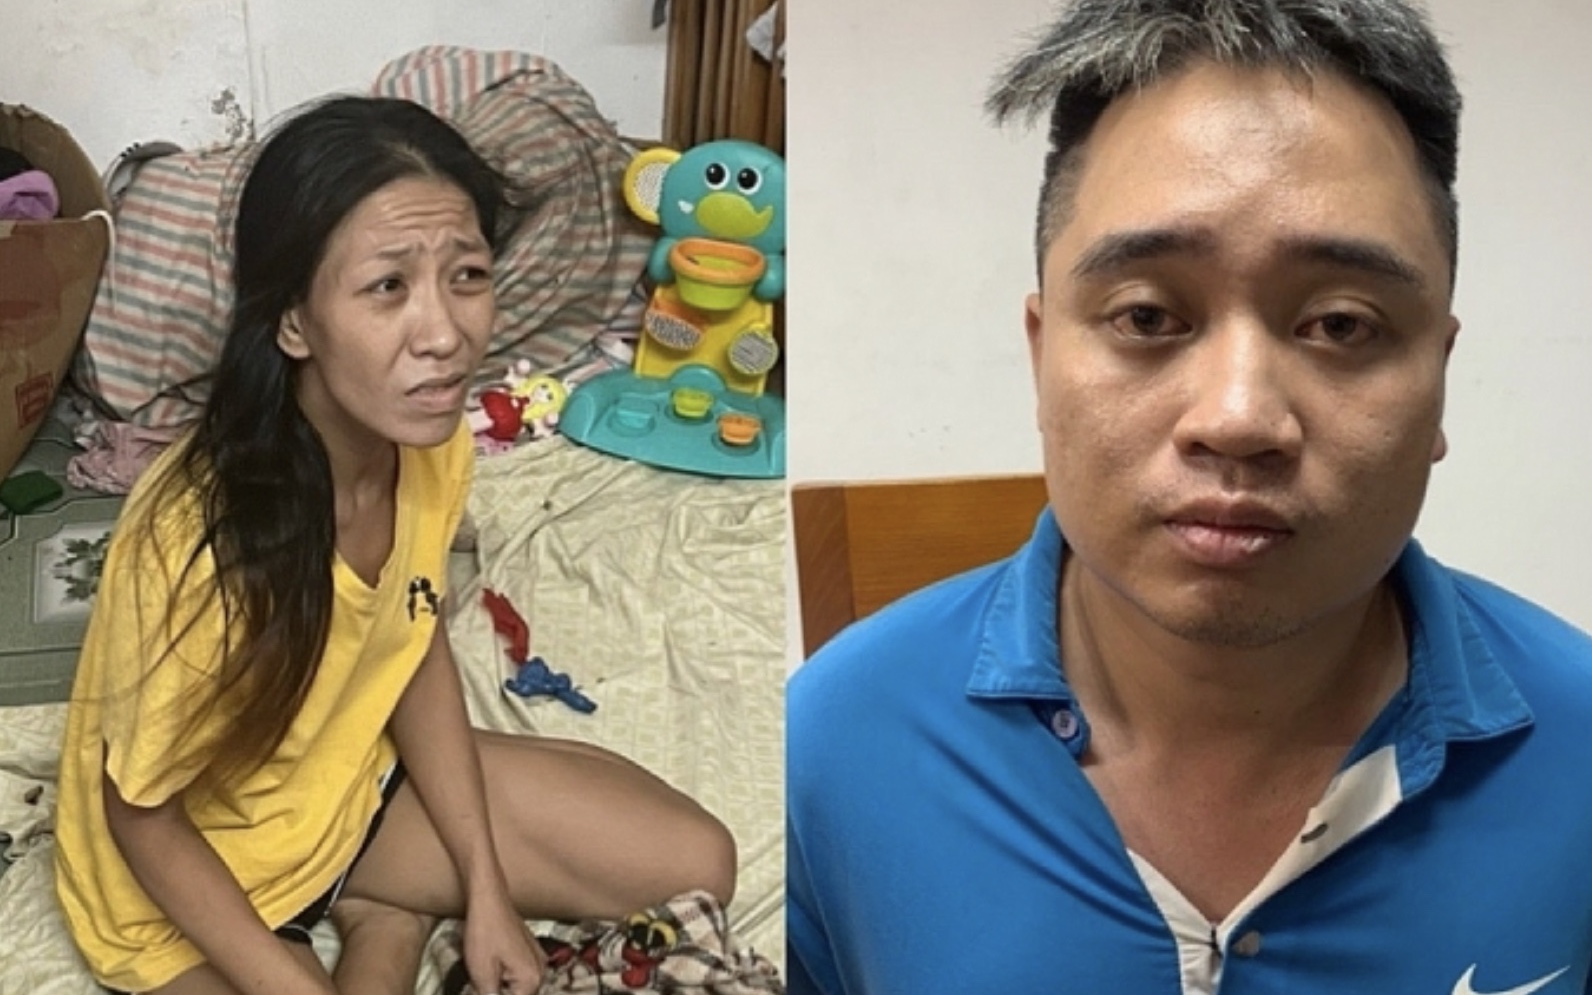 Hà Nội: Người phụ nữ tử vong vì ngã ra đường khi bị giật túi xách